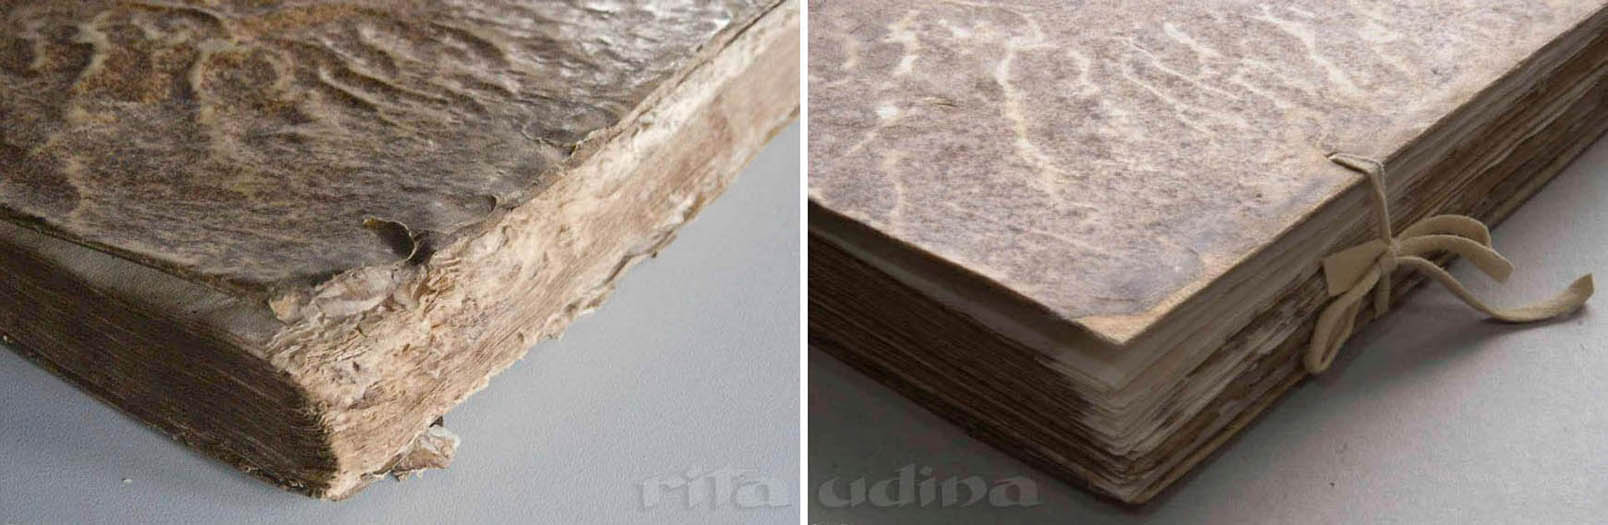 cantonera de pergamino en encuadernación semi-flexible, antes y después de la restauración